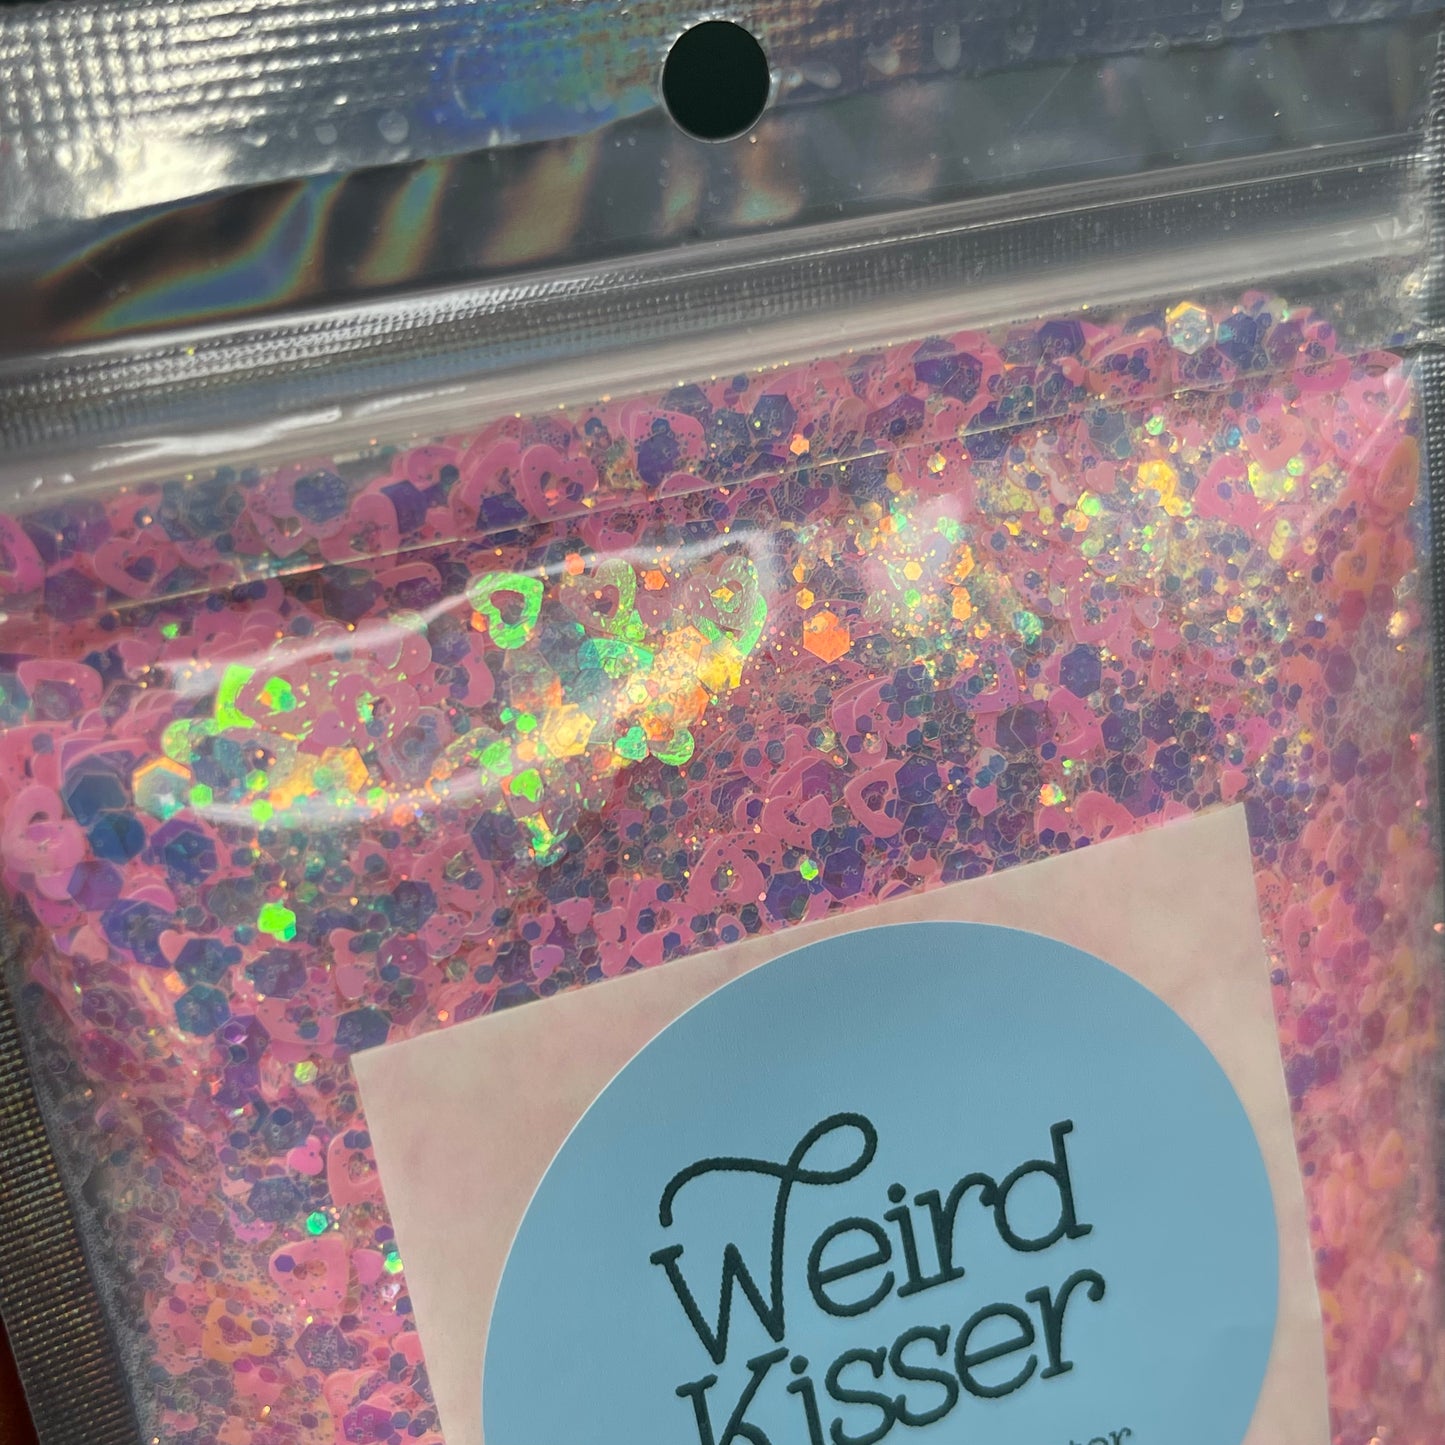 Weird Kisser Glitter - 2.2 oz